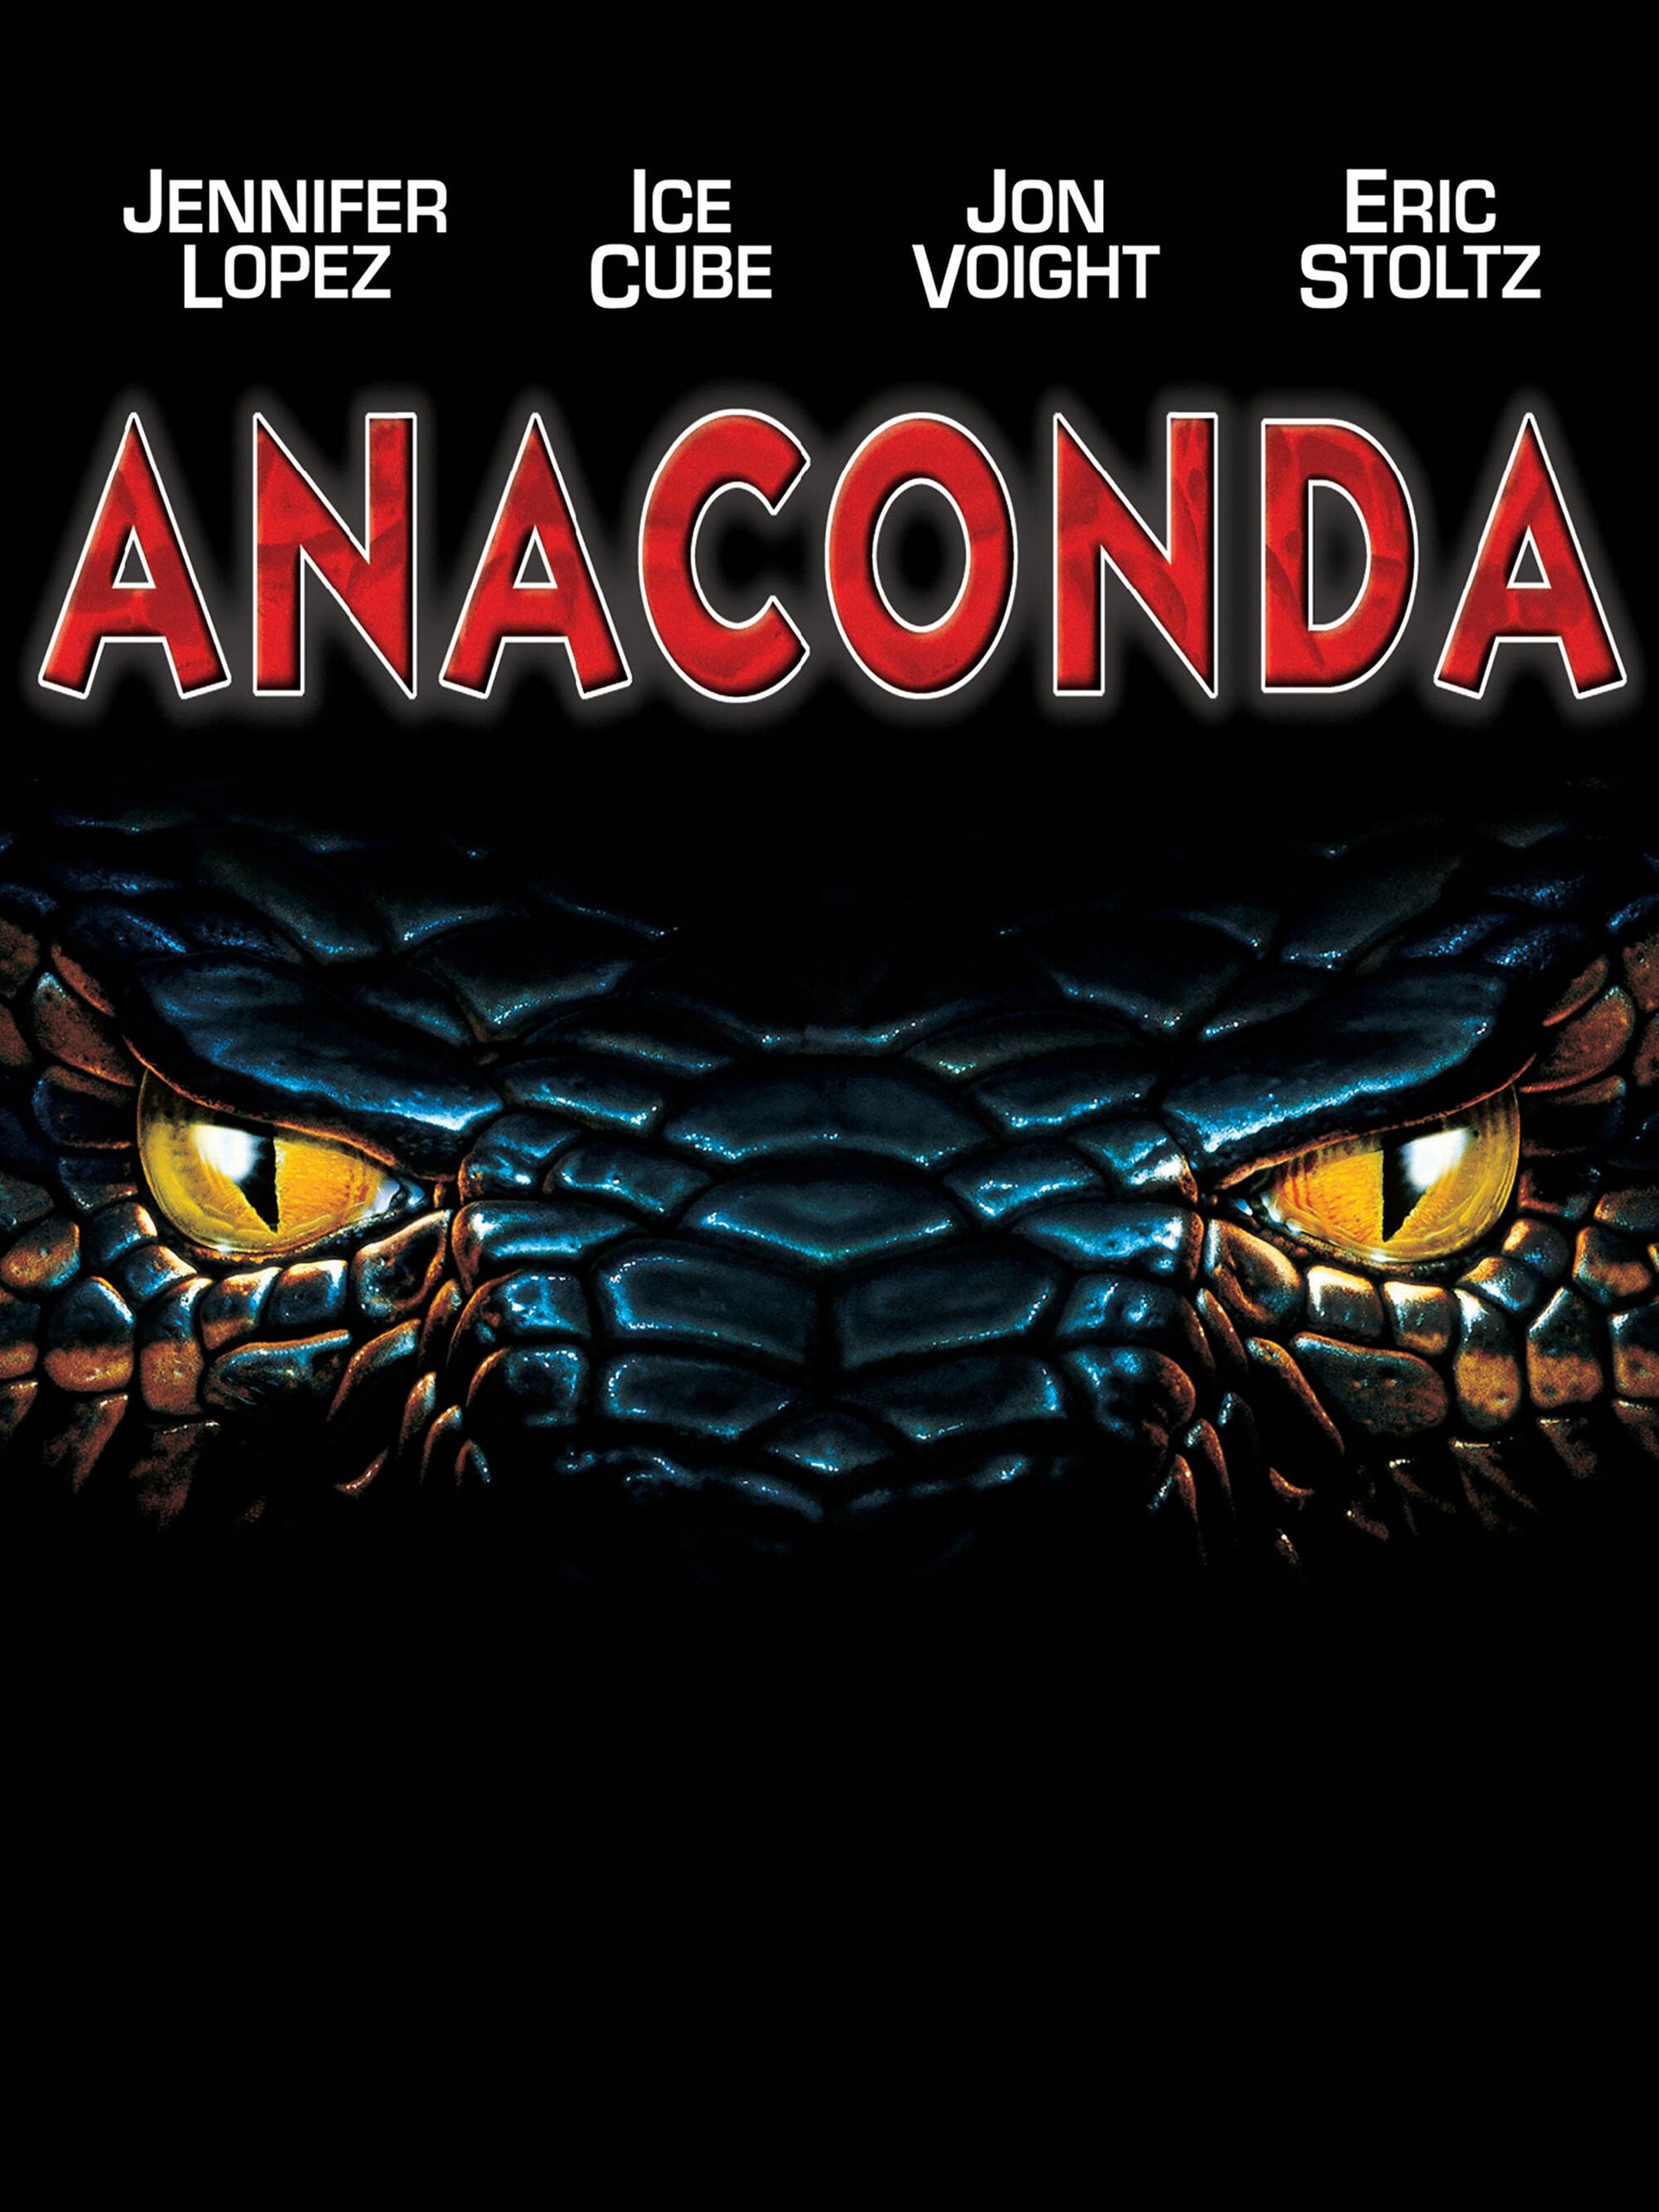 Anaconda Official Clip Anaconda at the Waterfall Trailers & Videos